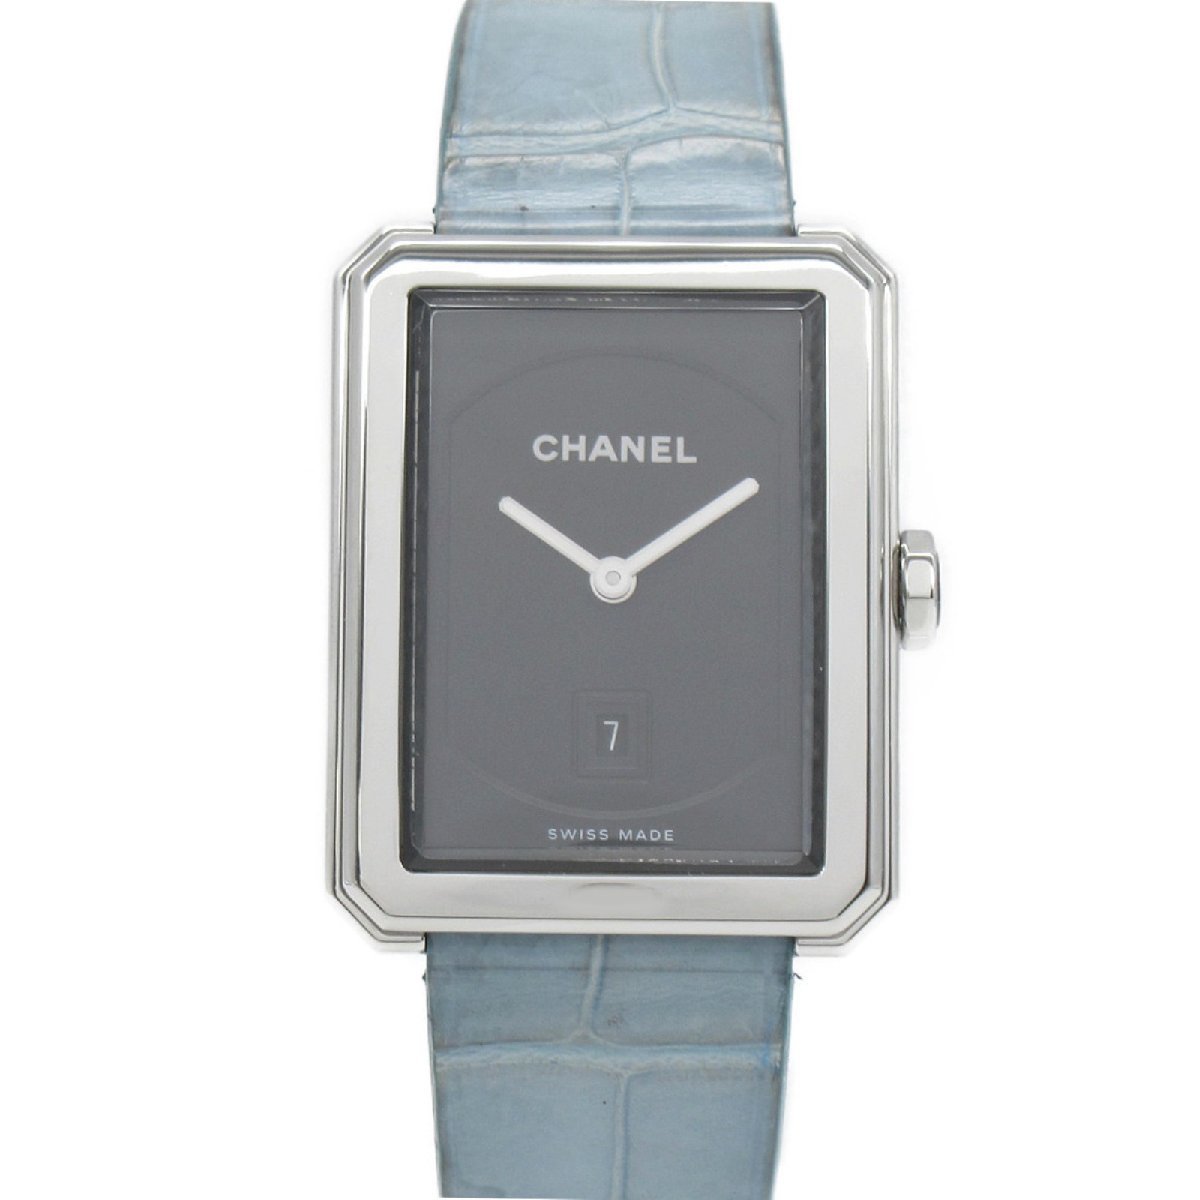 CHANEL シャネル 腕時計 ボーイフレンド 腕時計 ウォッチ ブラック系 ステンレススチール クロコレザーベルト 中古 レディース